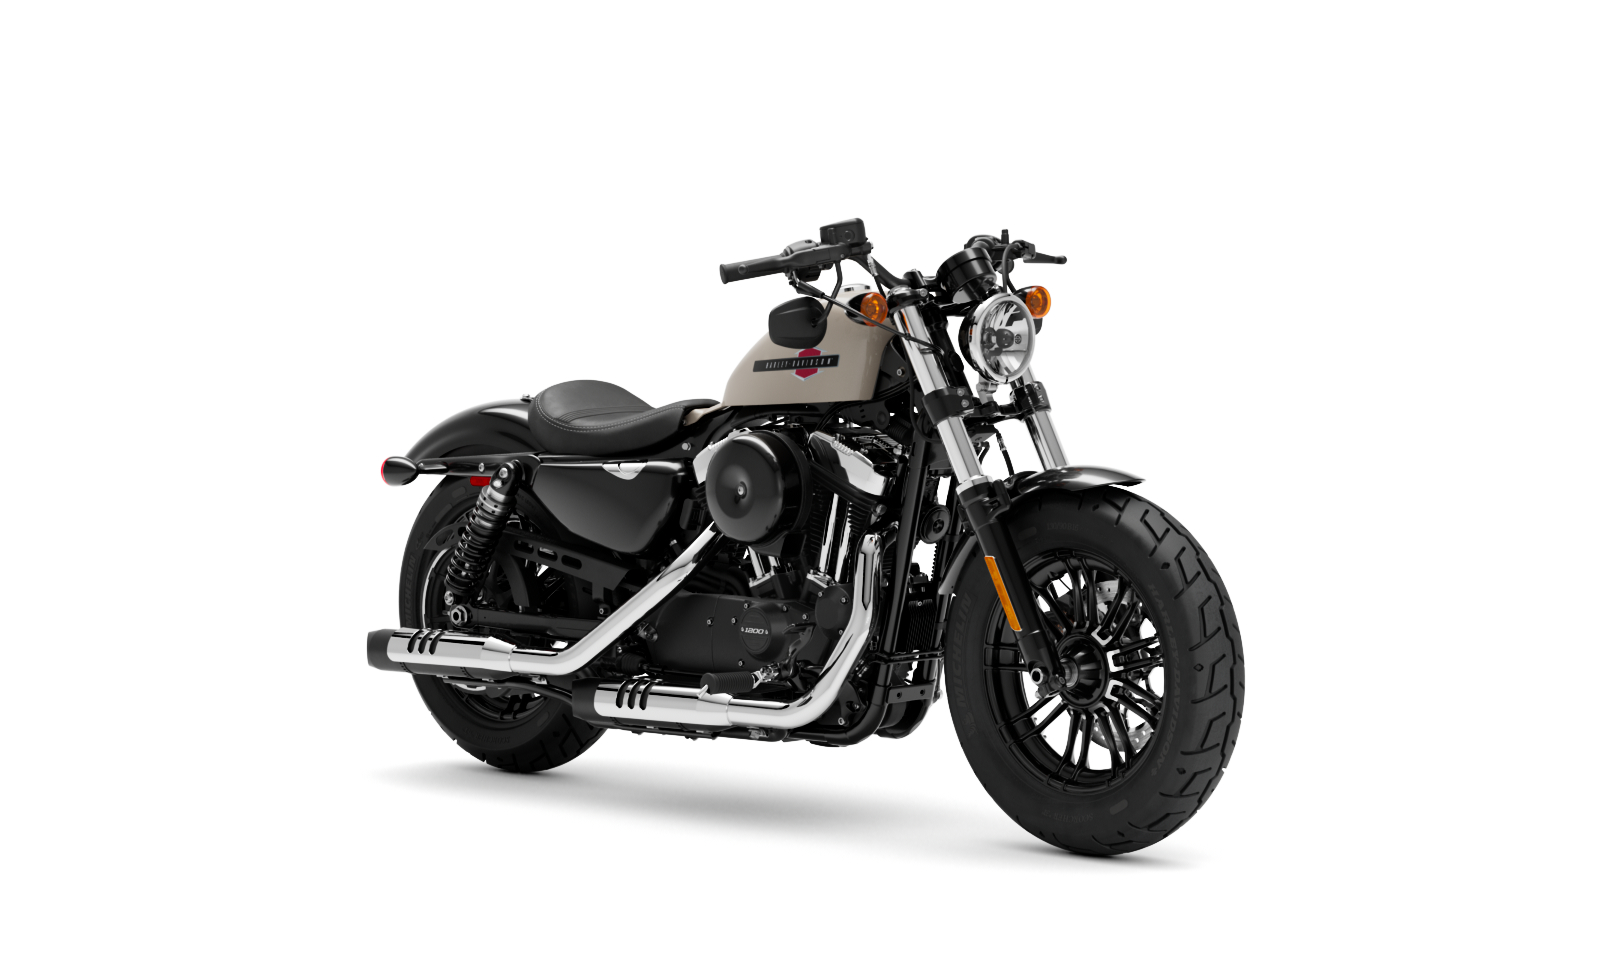 Bảng giá xe Harley Davidson moto mới nhất tại Việt Nam  Các mẫu xe Harley  Davidson mới nhất năm 2020  Mô Tô Việt